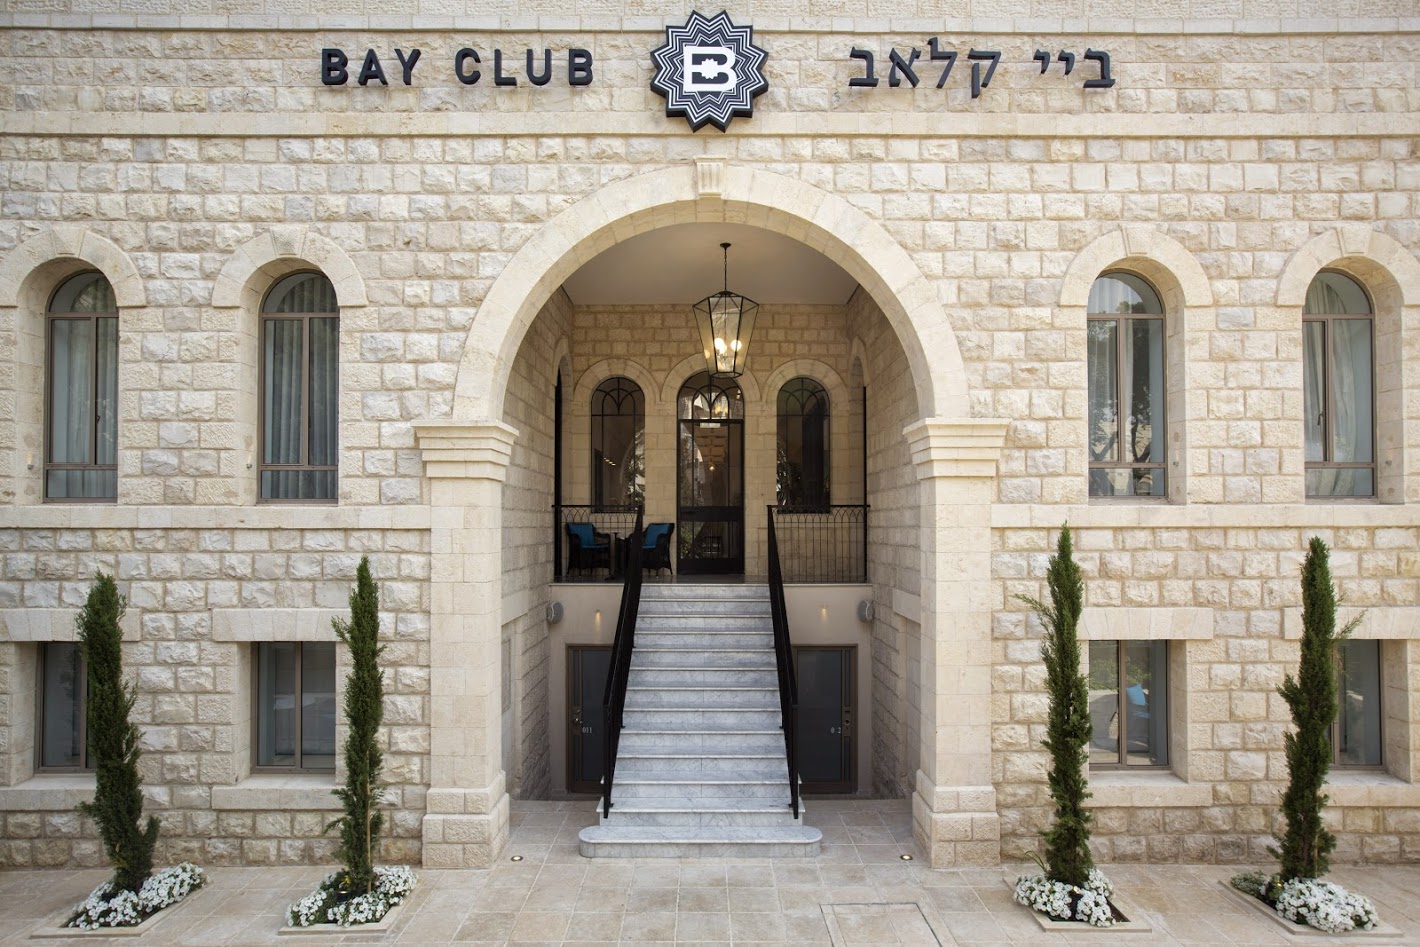 BAY CLUB HOTEL, HAIFA